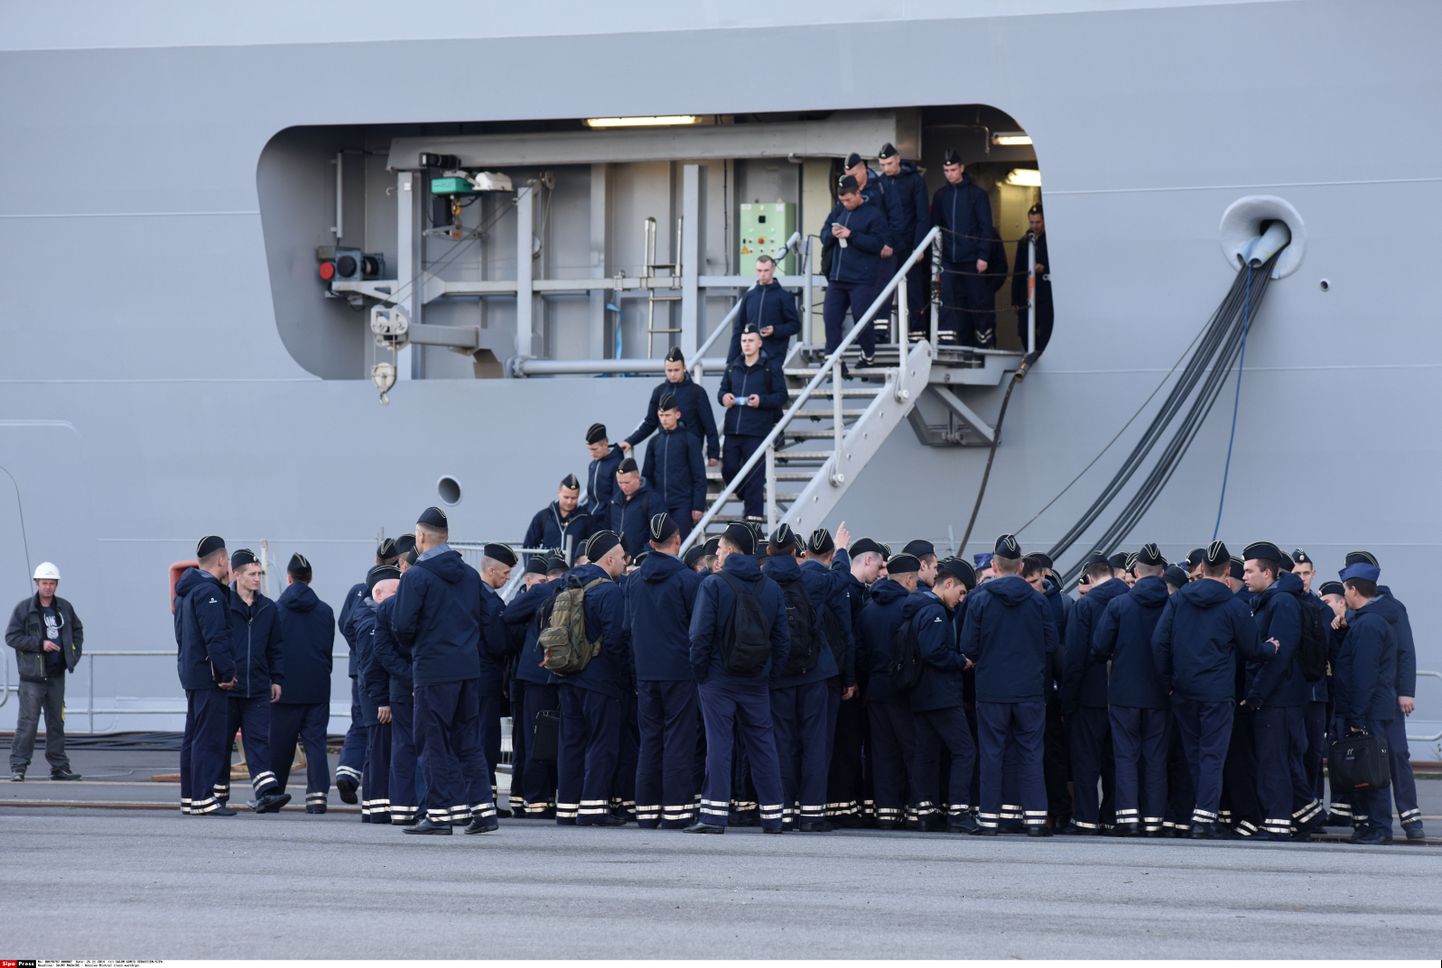 Vene mereväelased väljuvad pärast treeningpäeva Mistral-klassi helikopterikandjast Vladivostok.